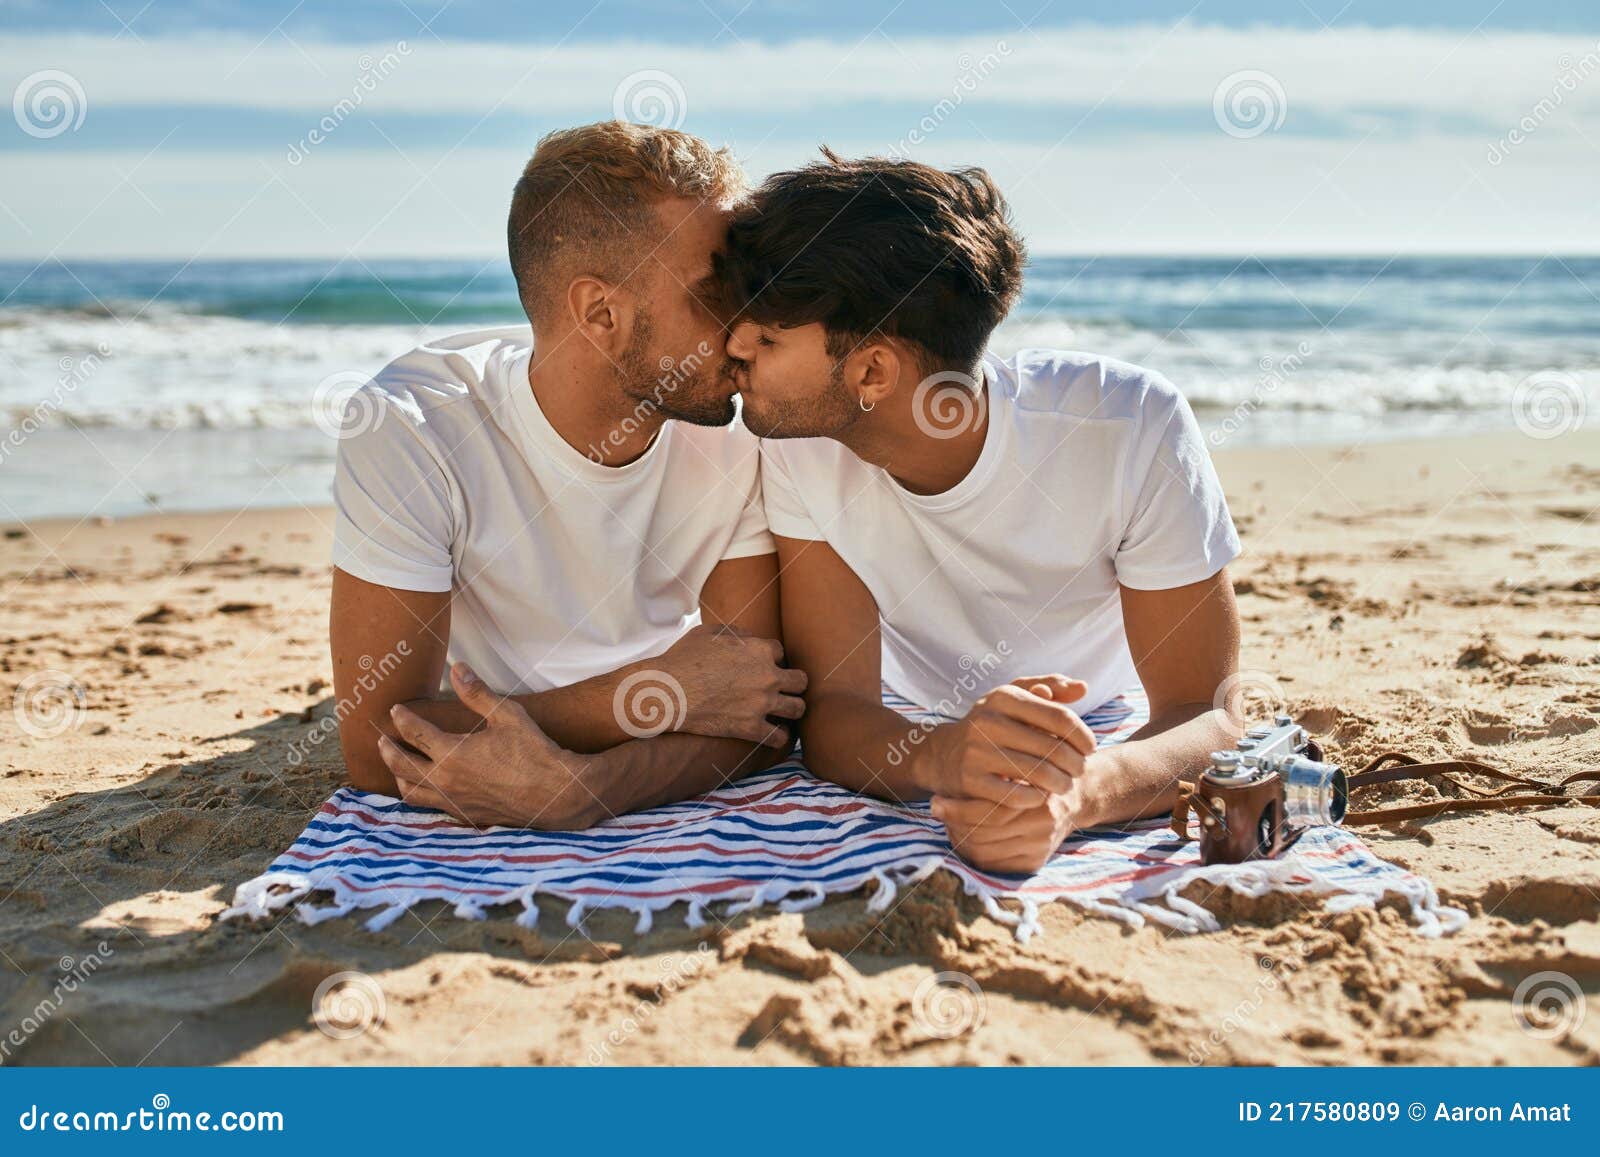 800,000+张最精彩的“同性恋”图片 · 100%免费下载 · Pexels素材图片